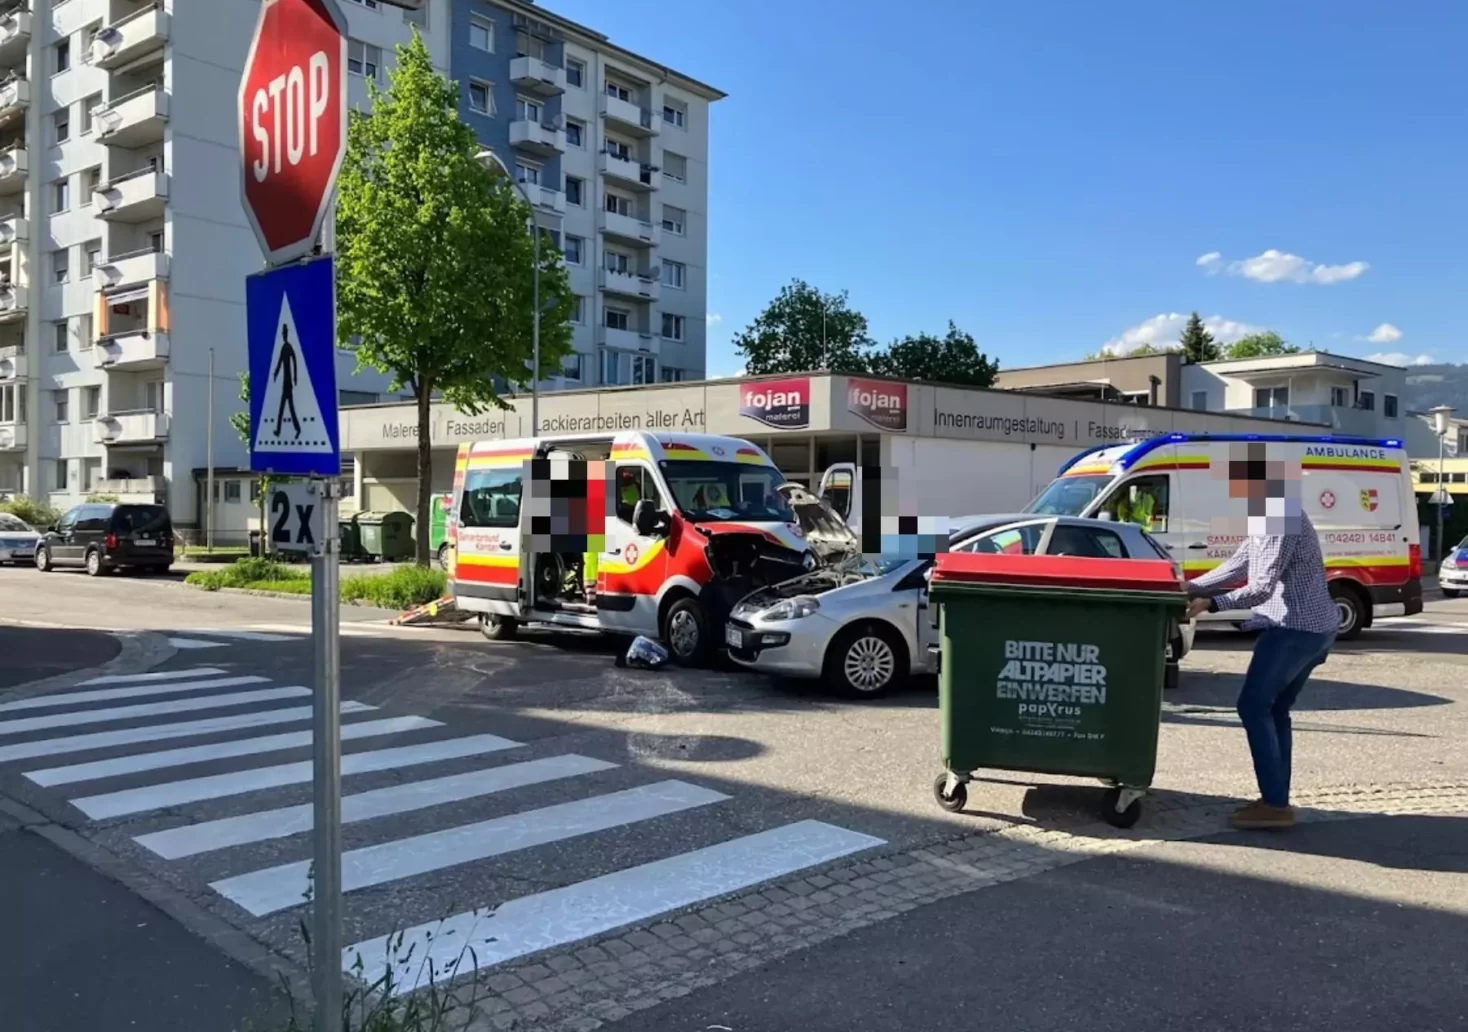 Foto in Beitrag von 5min.at: Zu sehen ist der Unfall in Villach, in den ein Rettungsauto und ein Auto verwickelt waren.